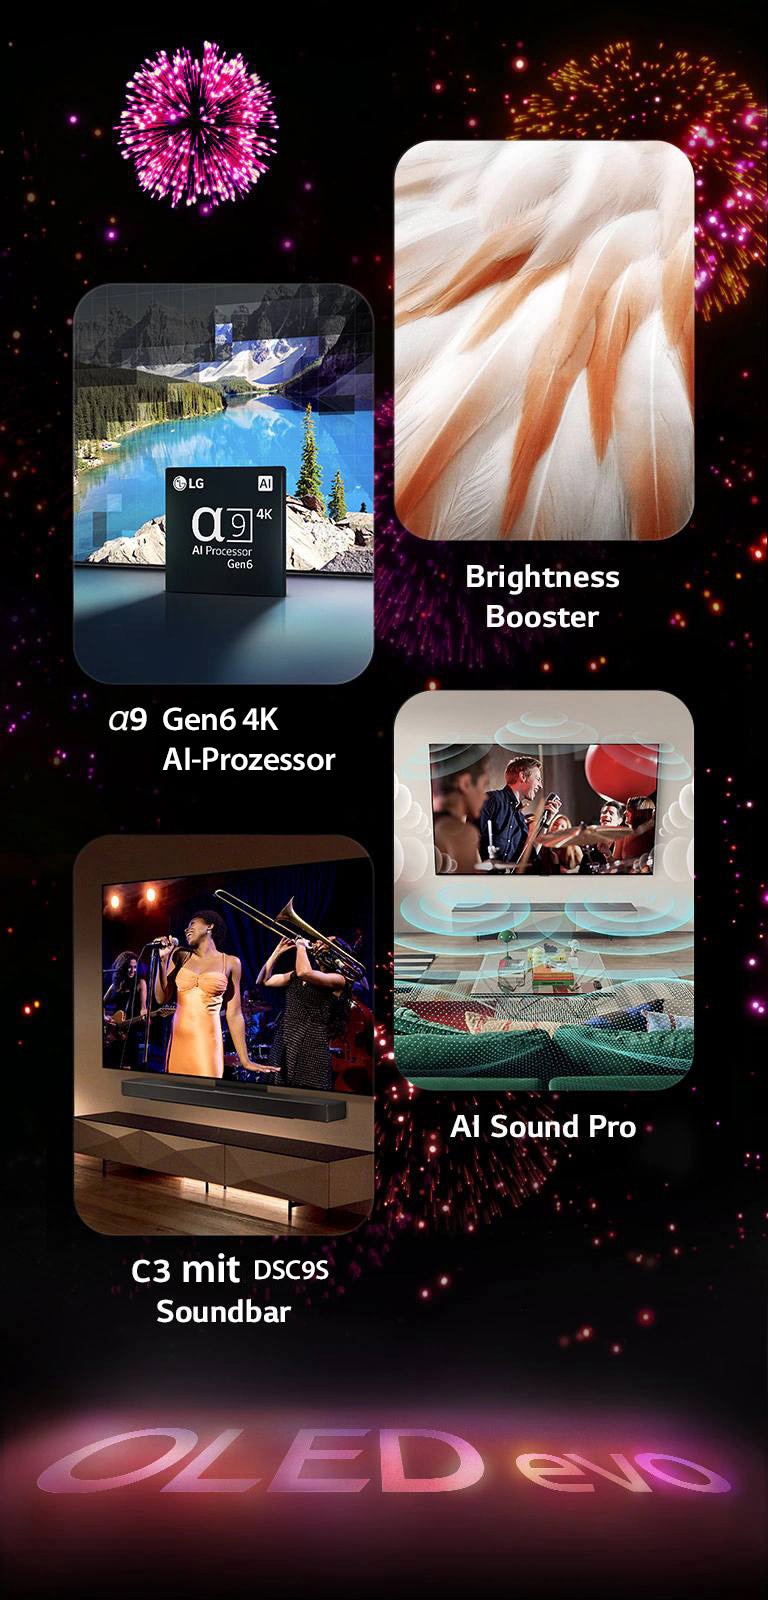 Ein Bild, das die wichtigsten Merkmale des LG OLED evo TV C3 vor einem schwarzen Hintergrund mit einem rosa und lila Feuerwerk zeigt. Die rosa Reflexion des Feuerwerks auf dem Boden zeigt die Worte "OLED evo". Ein Bild mit dem α9 Gen6 4K AI-Prozessor zeigt den Chip vor dem Bild einer Seeszene, die mit der Verarbeitungstechnologie neu gemastert wird. Ein Bild, das den Brightness Booster Max präsentiert, zeigt das helle Gefieder eines Vogels. Ein Bild, das die DSC9 Soundbar präsentiert, zeigt den LG OLED evo C3 und die DSC9 Soundbar an der Wand, während auf dem Fernseher ein Musikkonzert läuft. Ein Bild, das AI Sound Pro vorstellt, zeigt eine Rockshow auf dem Fernseher mit Musikblasen, die Schallwellen darstellen, die den Wohnraum erfüllen.